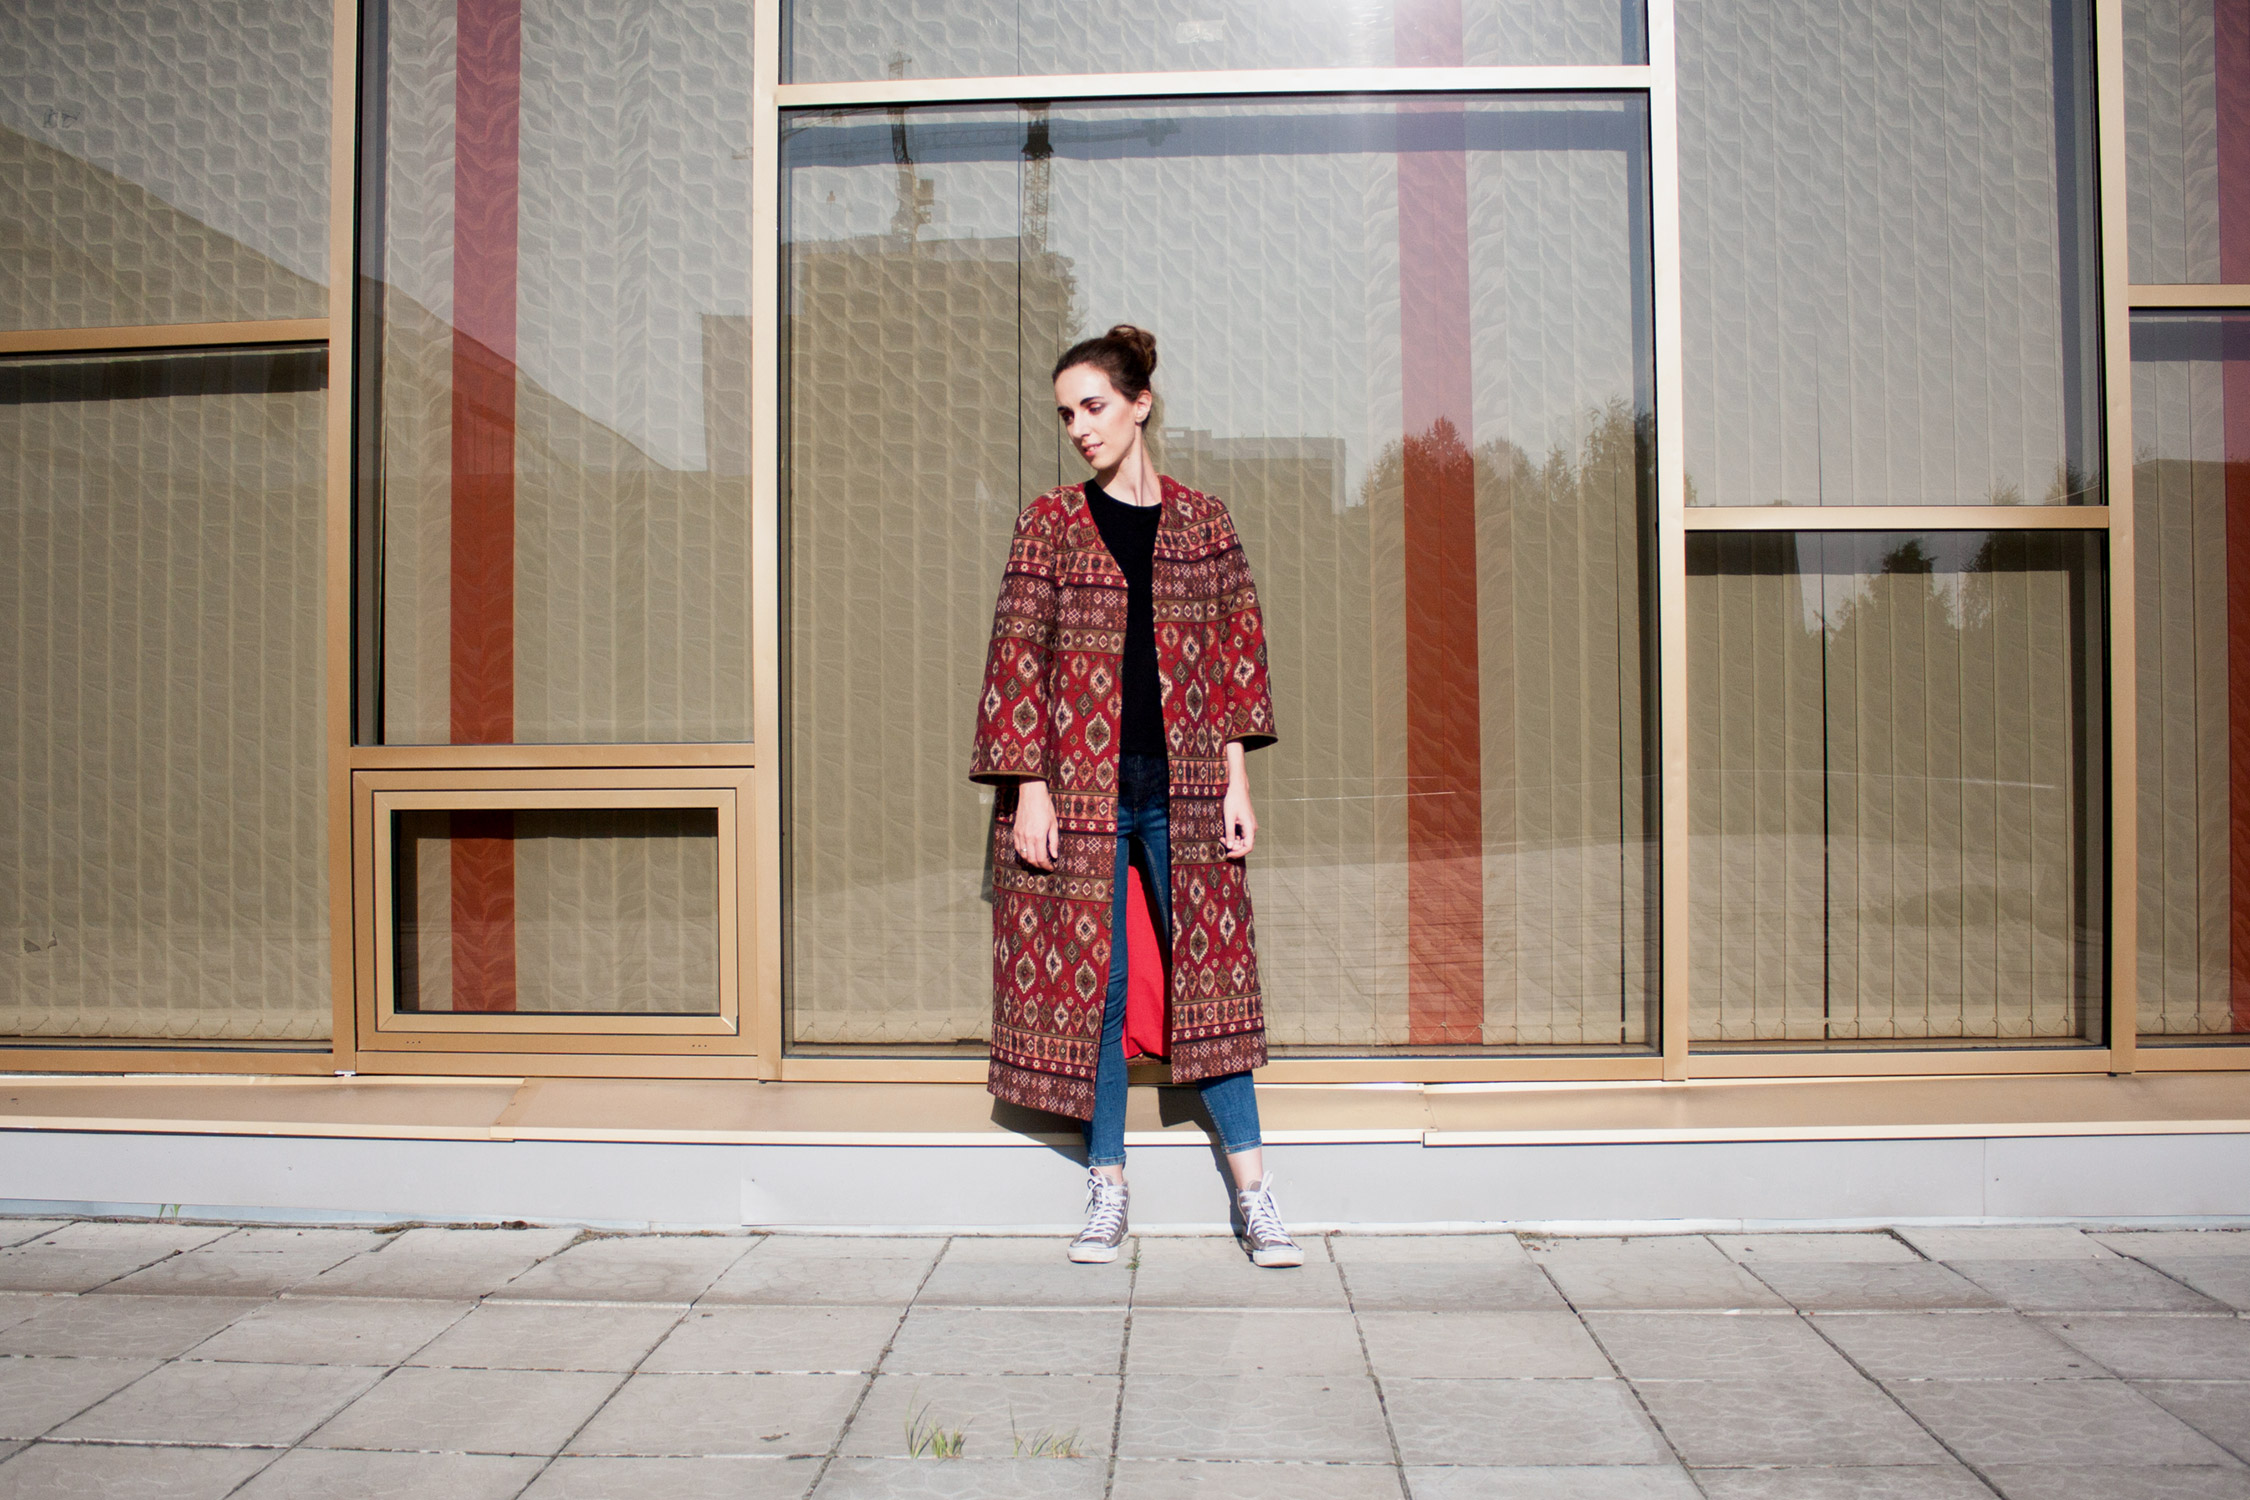 Халат-кимоно в ориентальном стиле. Фотообзор в журнале о нижнем белье и стиле GB {Garterblog.ru} / Фотограф – Анна Панова